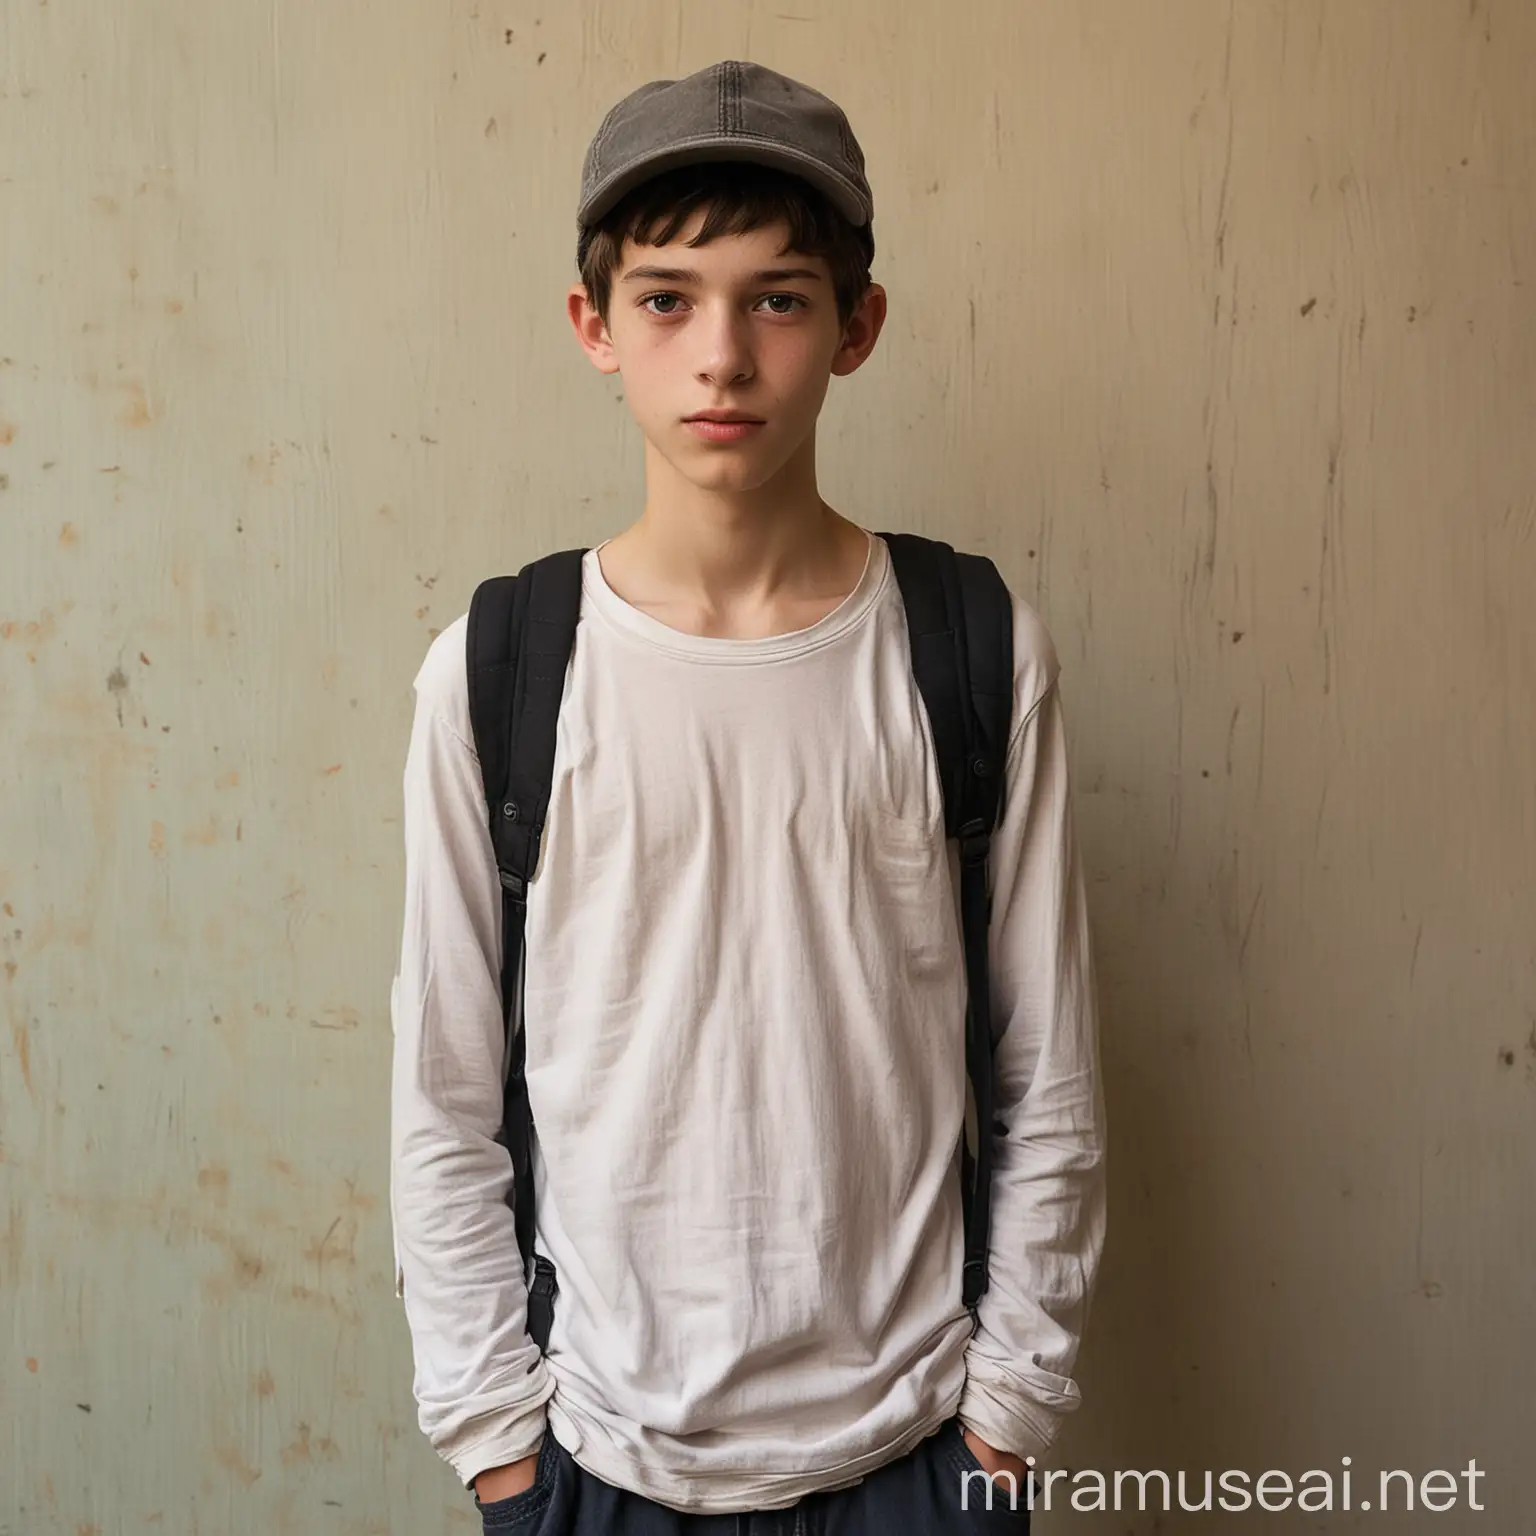 Jeune adolescent homme de 15 ans maigrelet, petit, porte une casquette, peau blanche, aime le cinéma, influencable et obéissant, porte des vêtements élimés